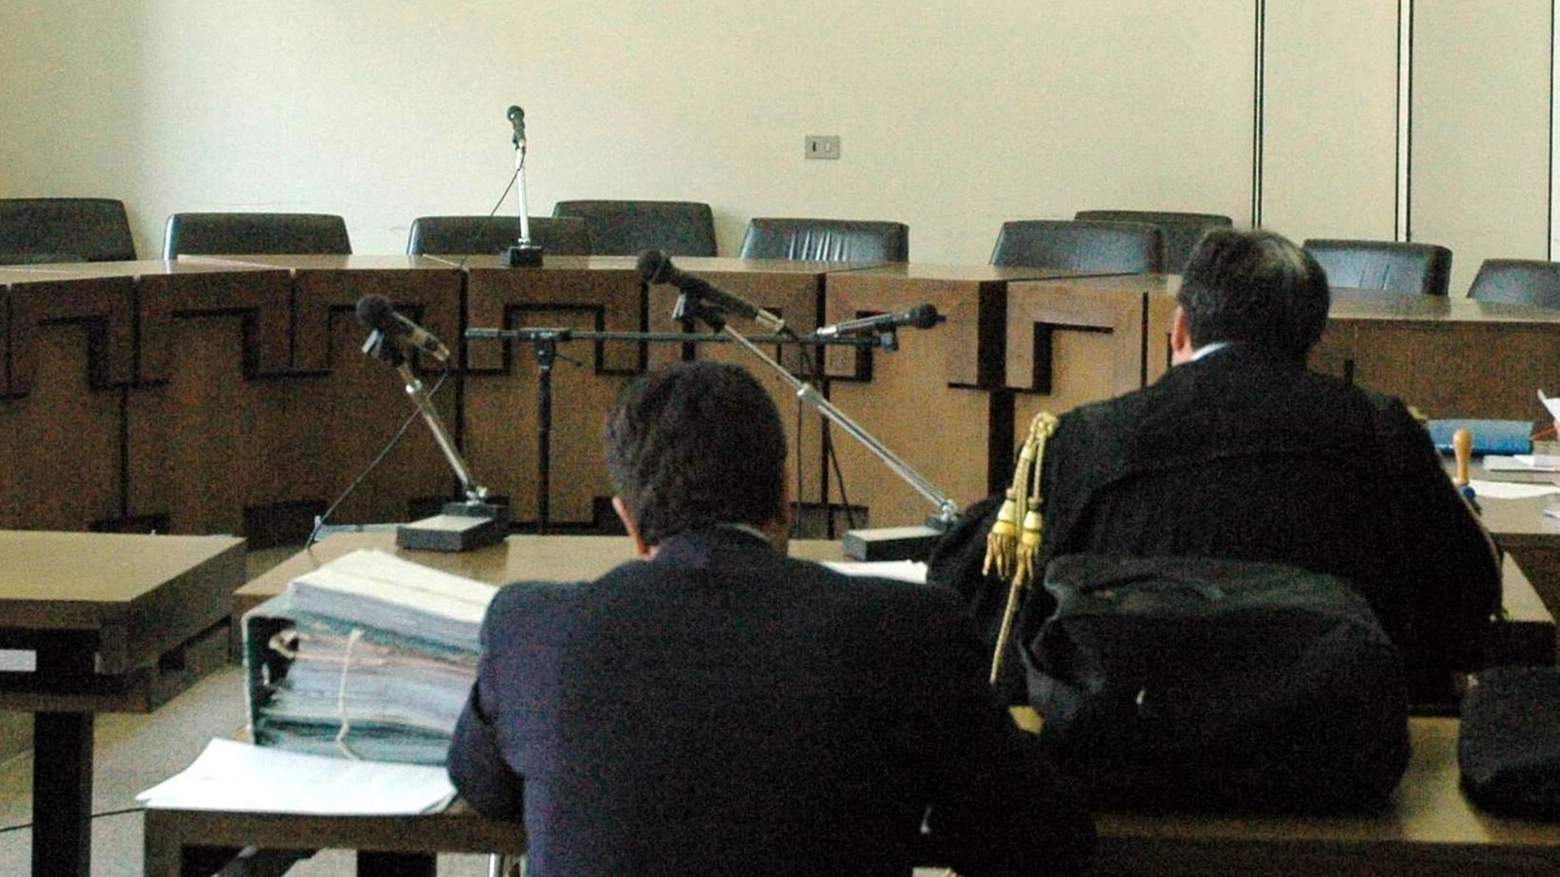 Corruzione, assolto ex assessore: "Un calvario giudiziario di otto anni"